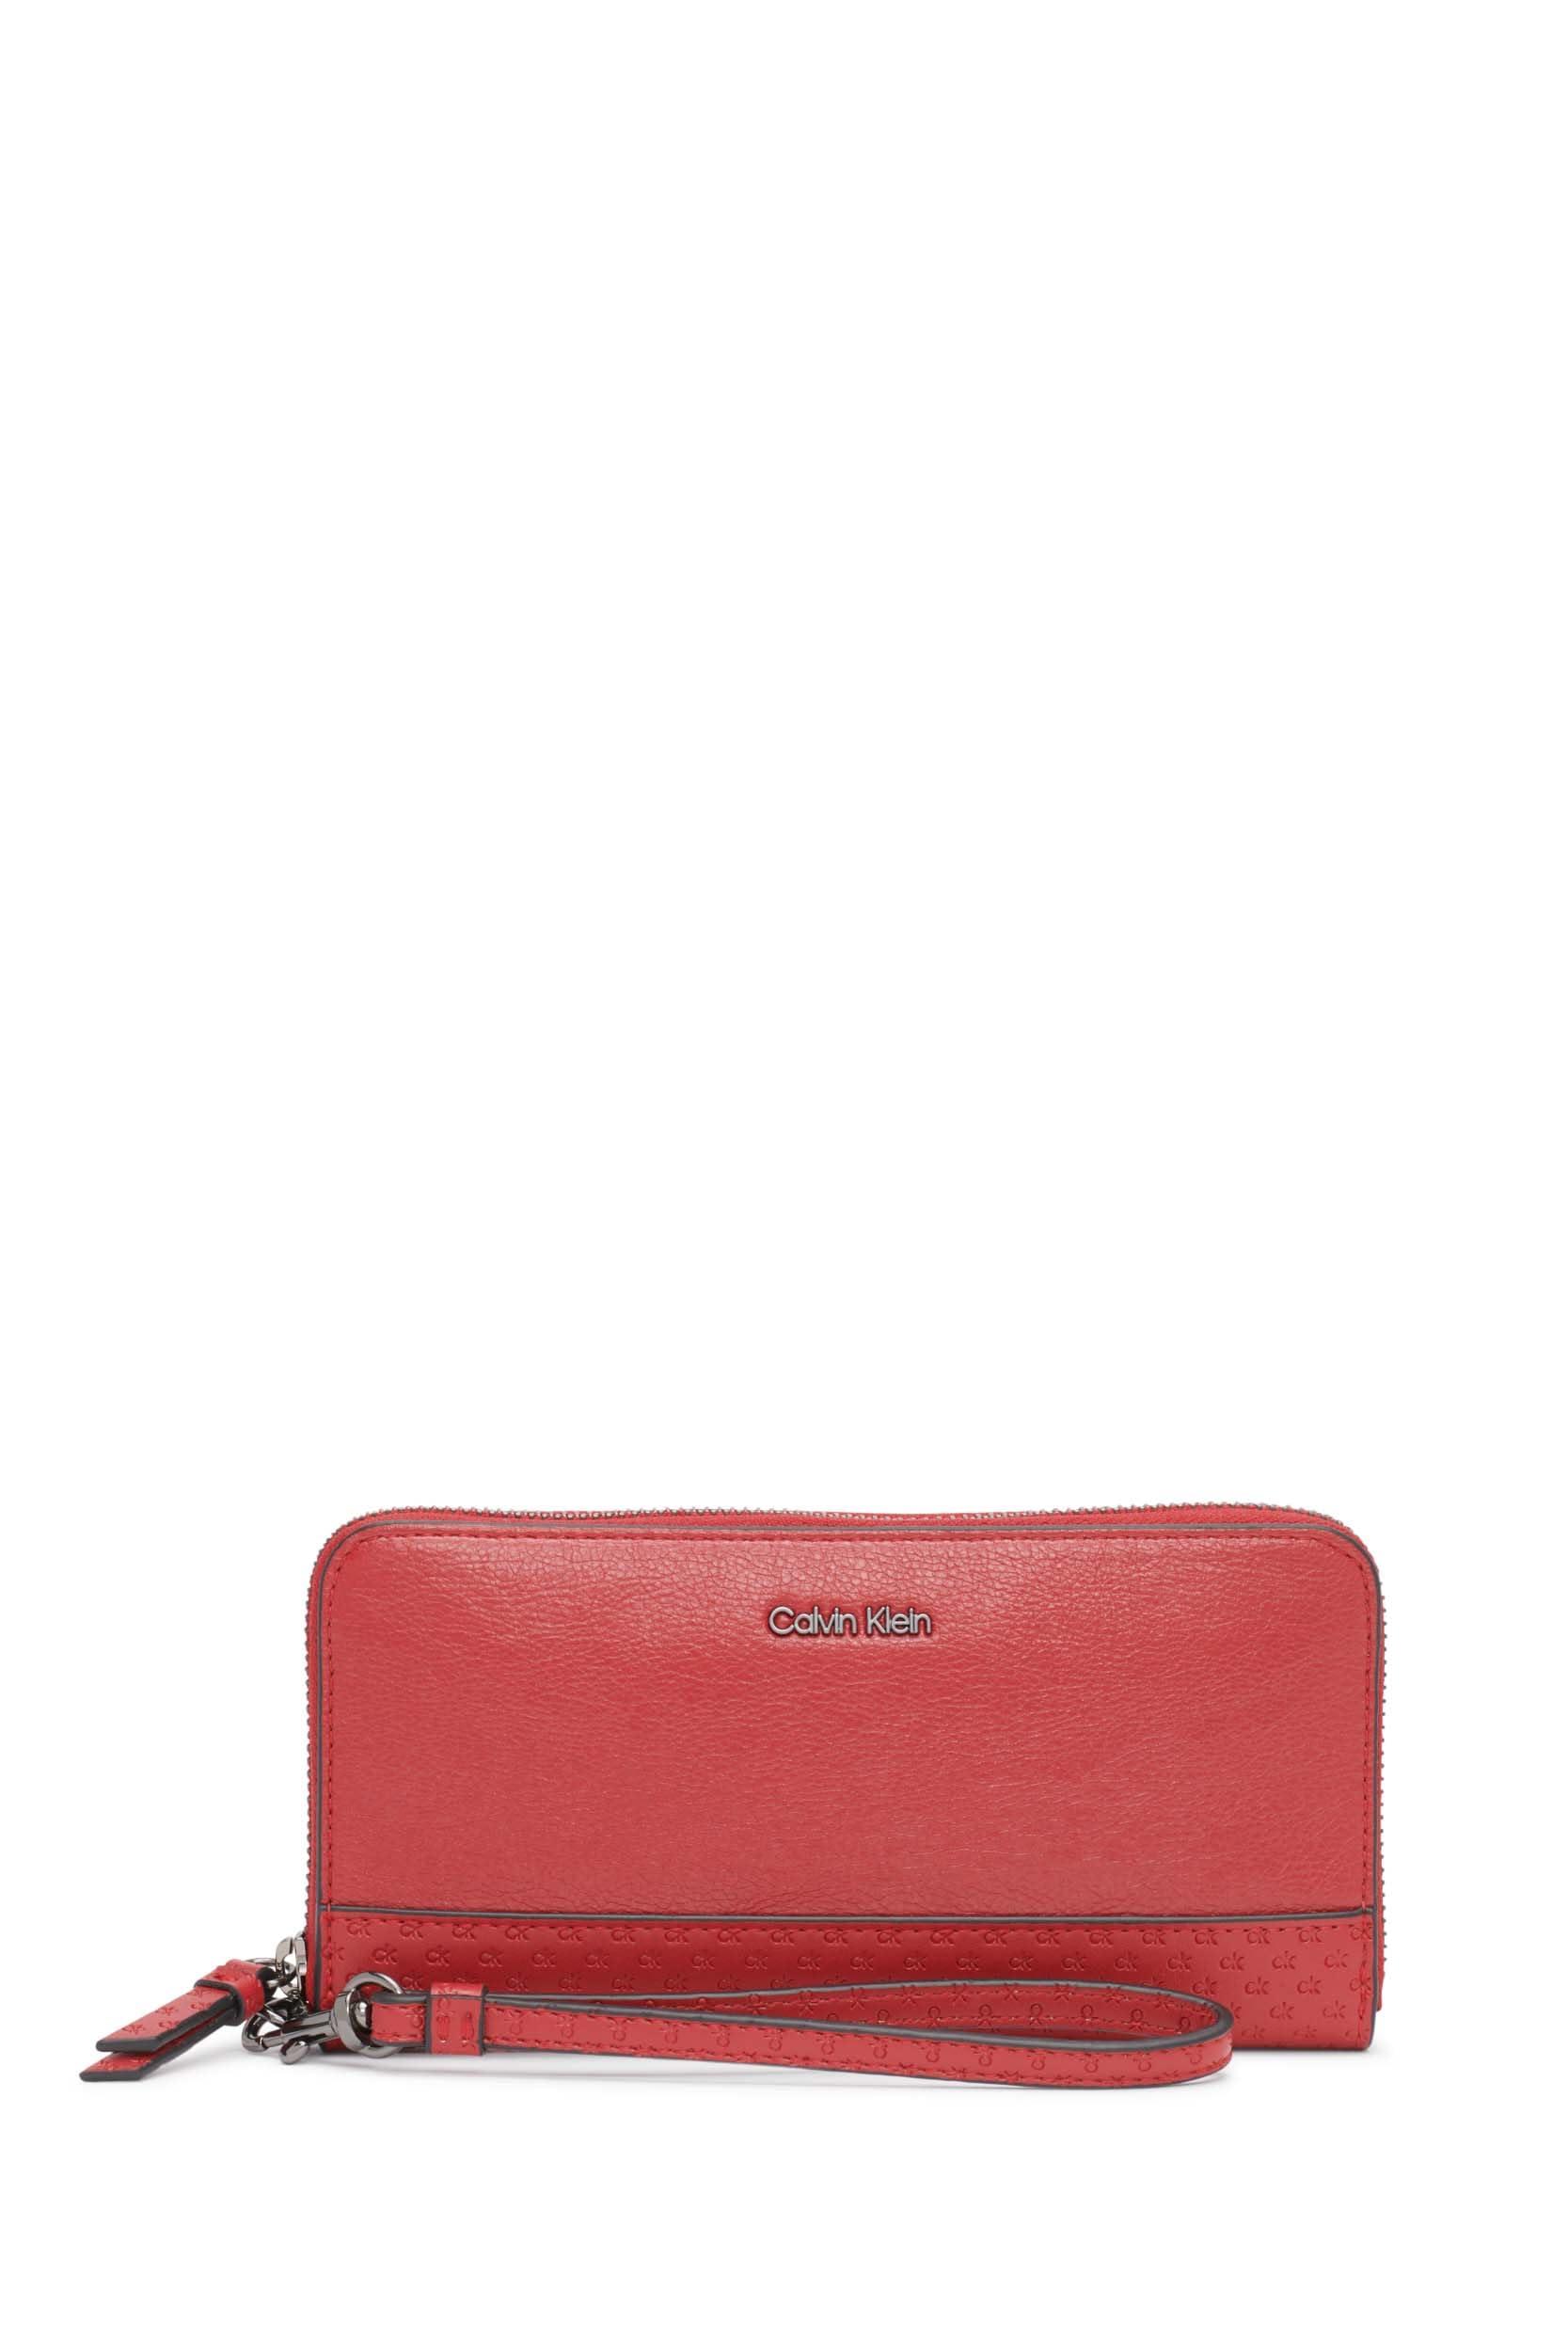 Calvin Klein Saffiano Wristlet: Handbags: Amazon.com